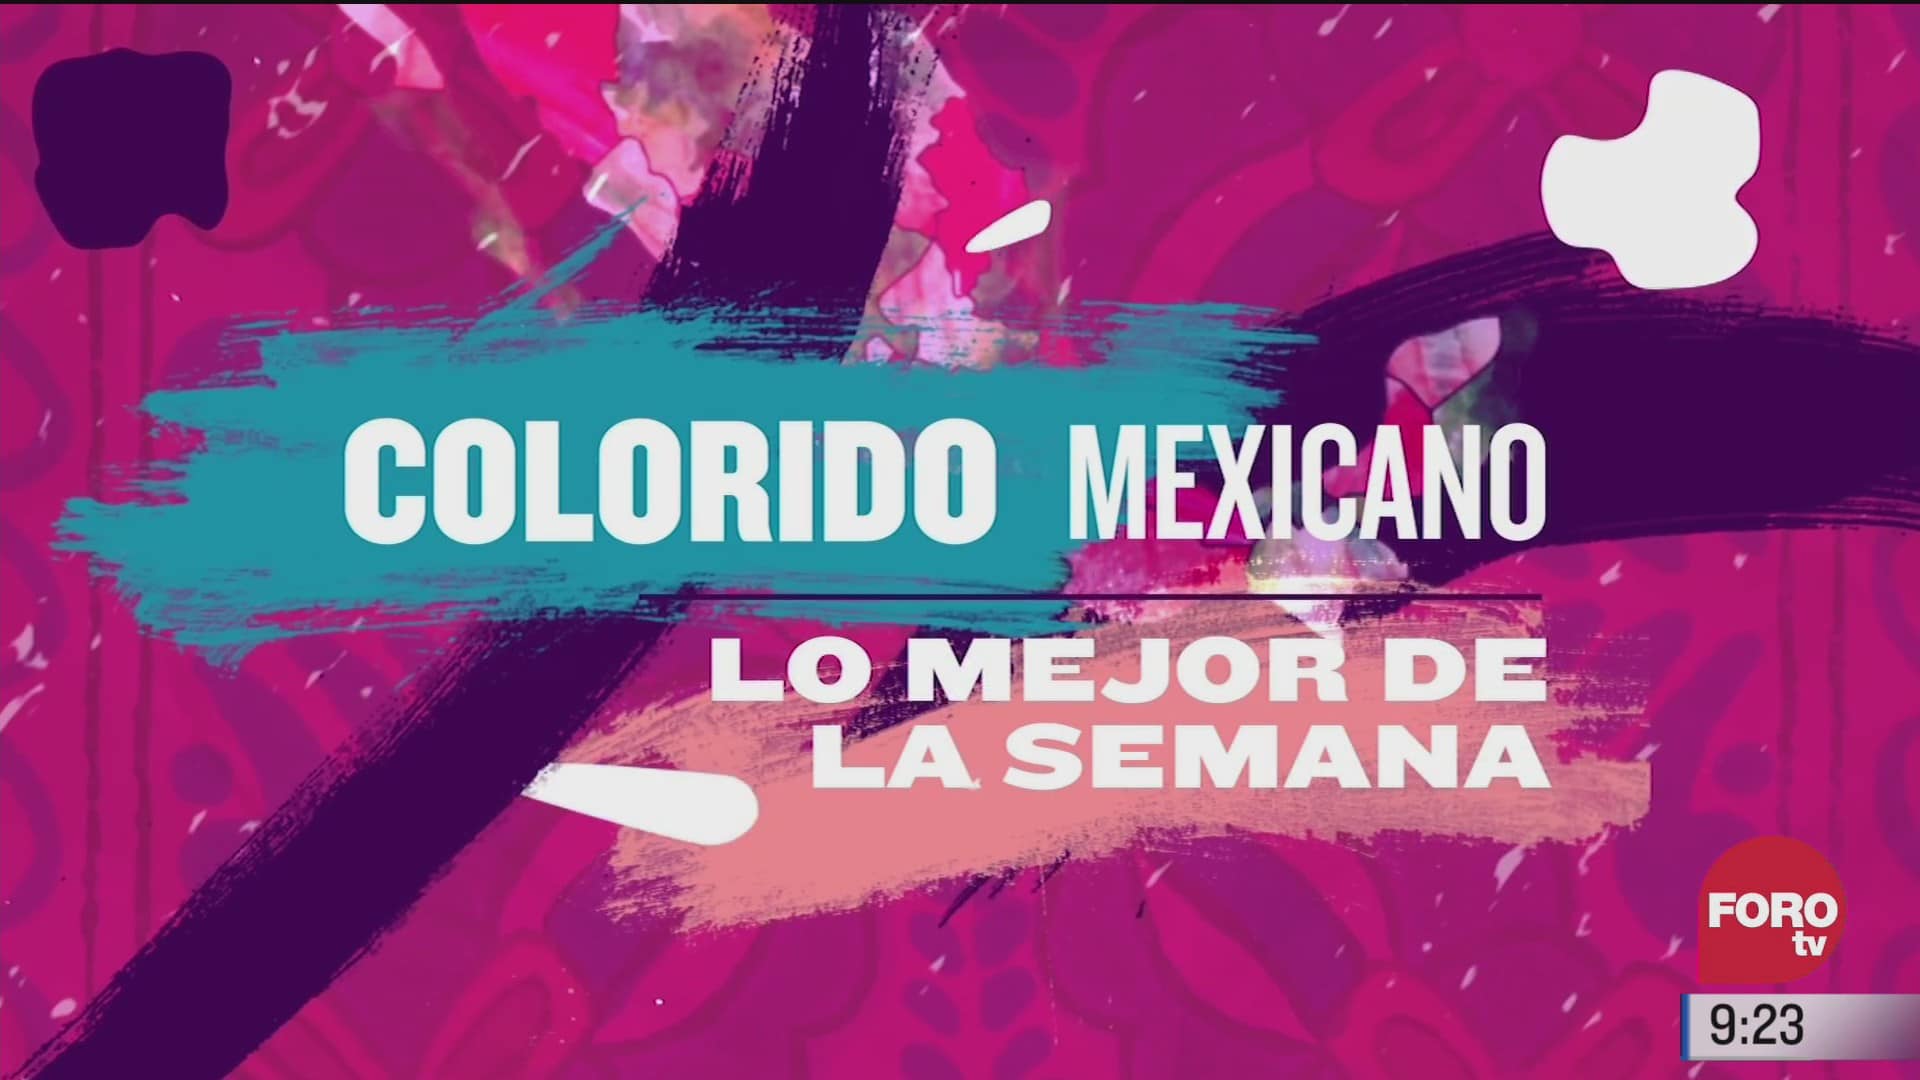 resumen semanal del colorido por la republica mexicana 10 enero